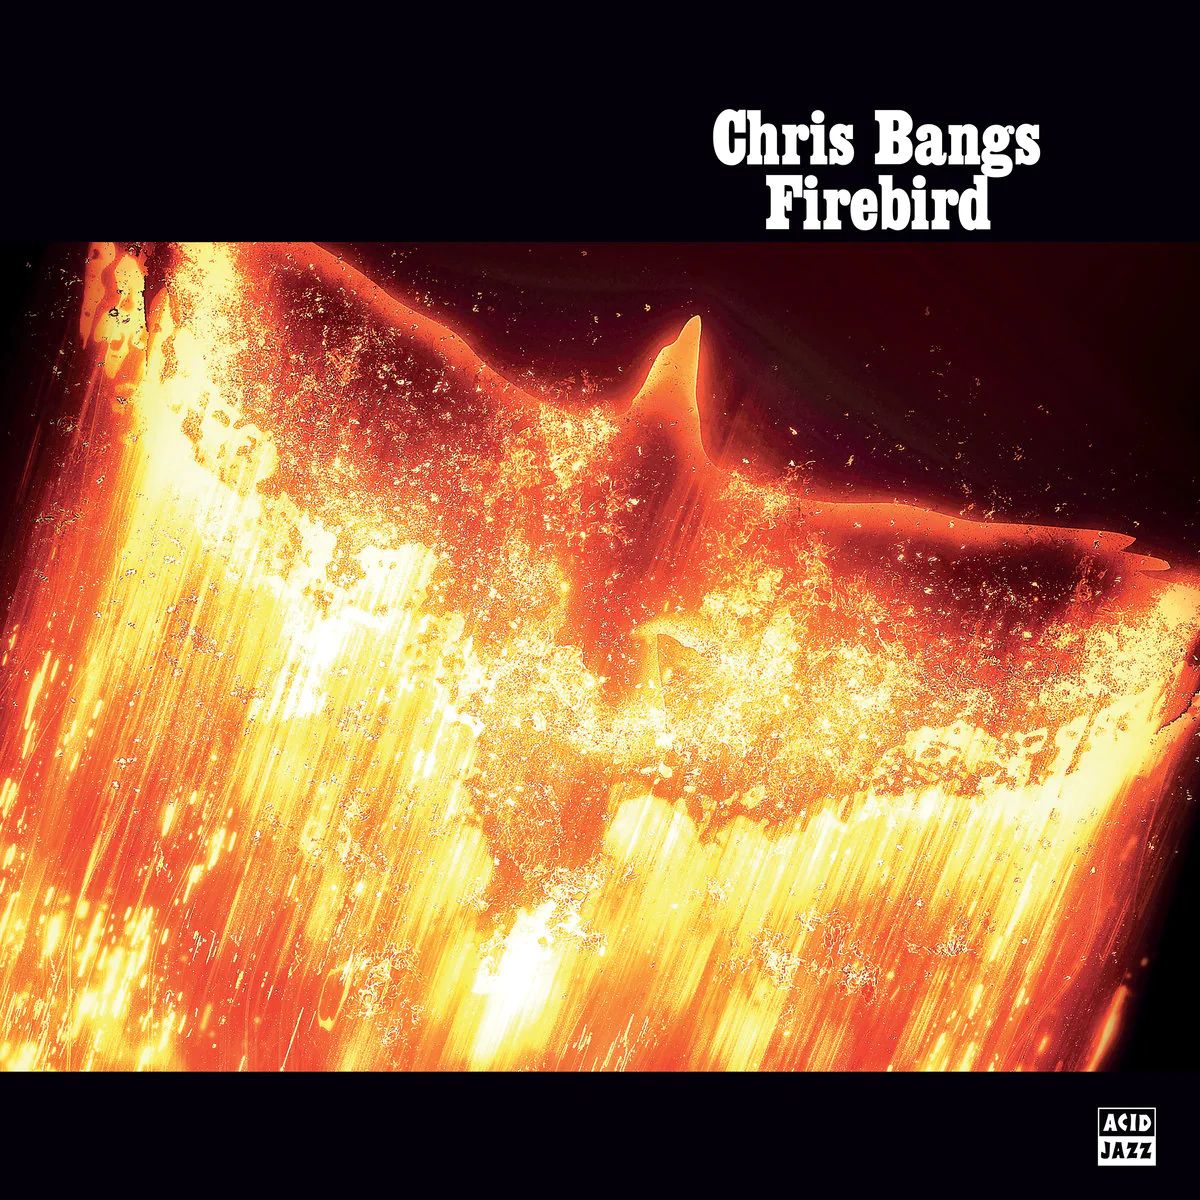 Виниловая пластинка Bangs, Chris, Firebird (0676499066157) цена и фото